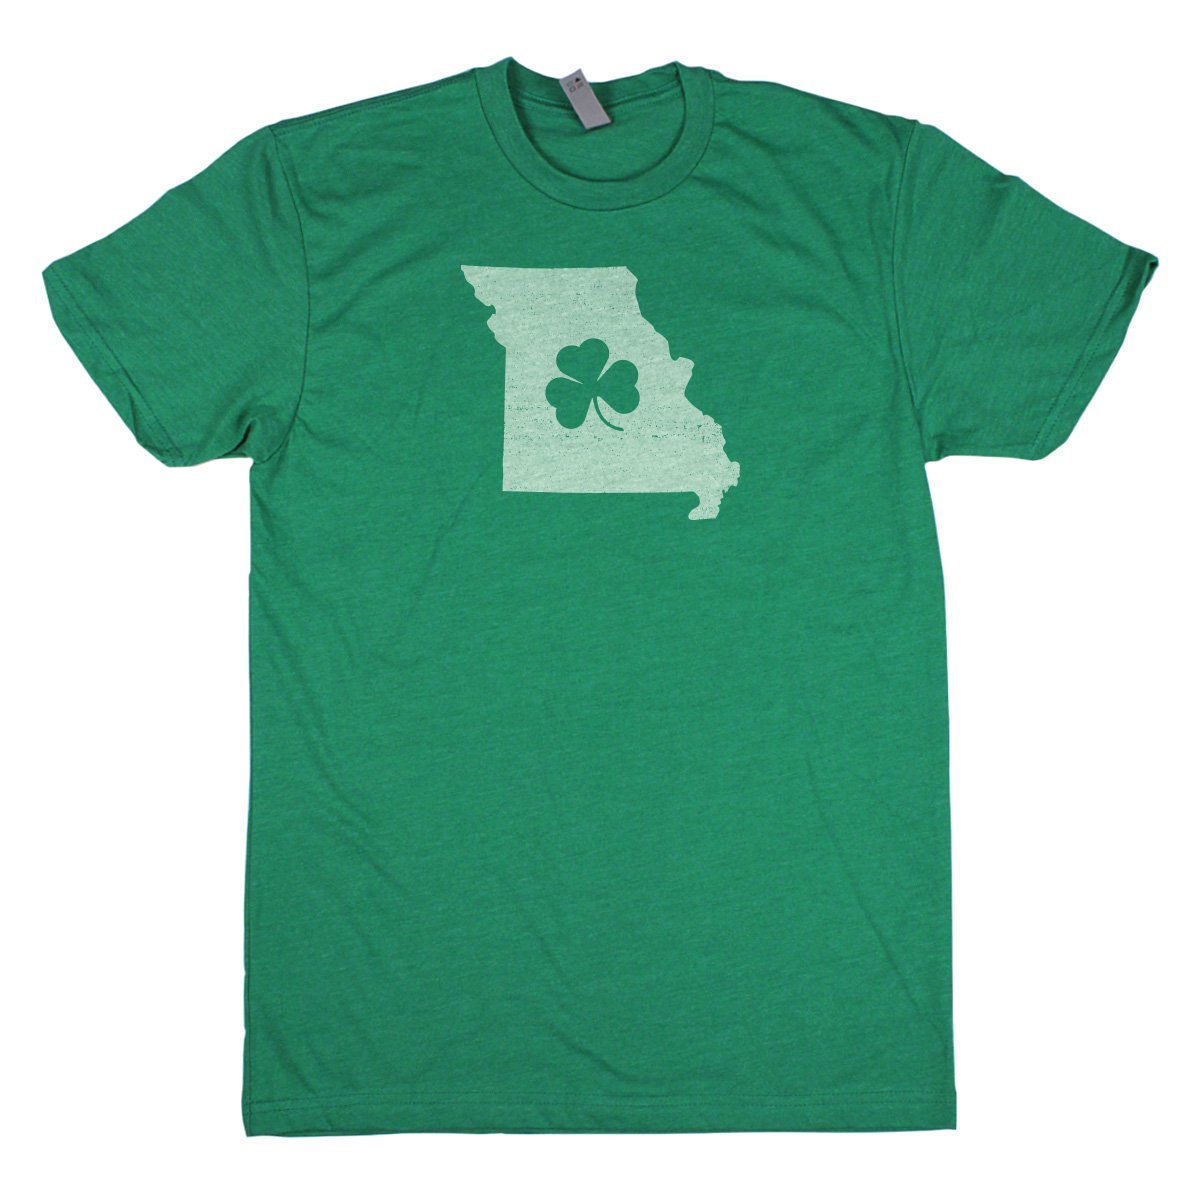 Shamrock Men's Unisex T-Shirt - Indiana